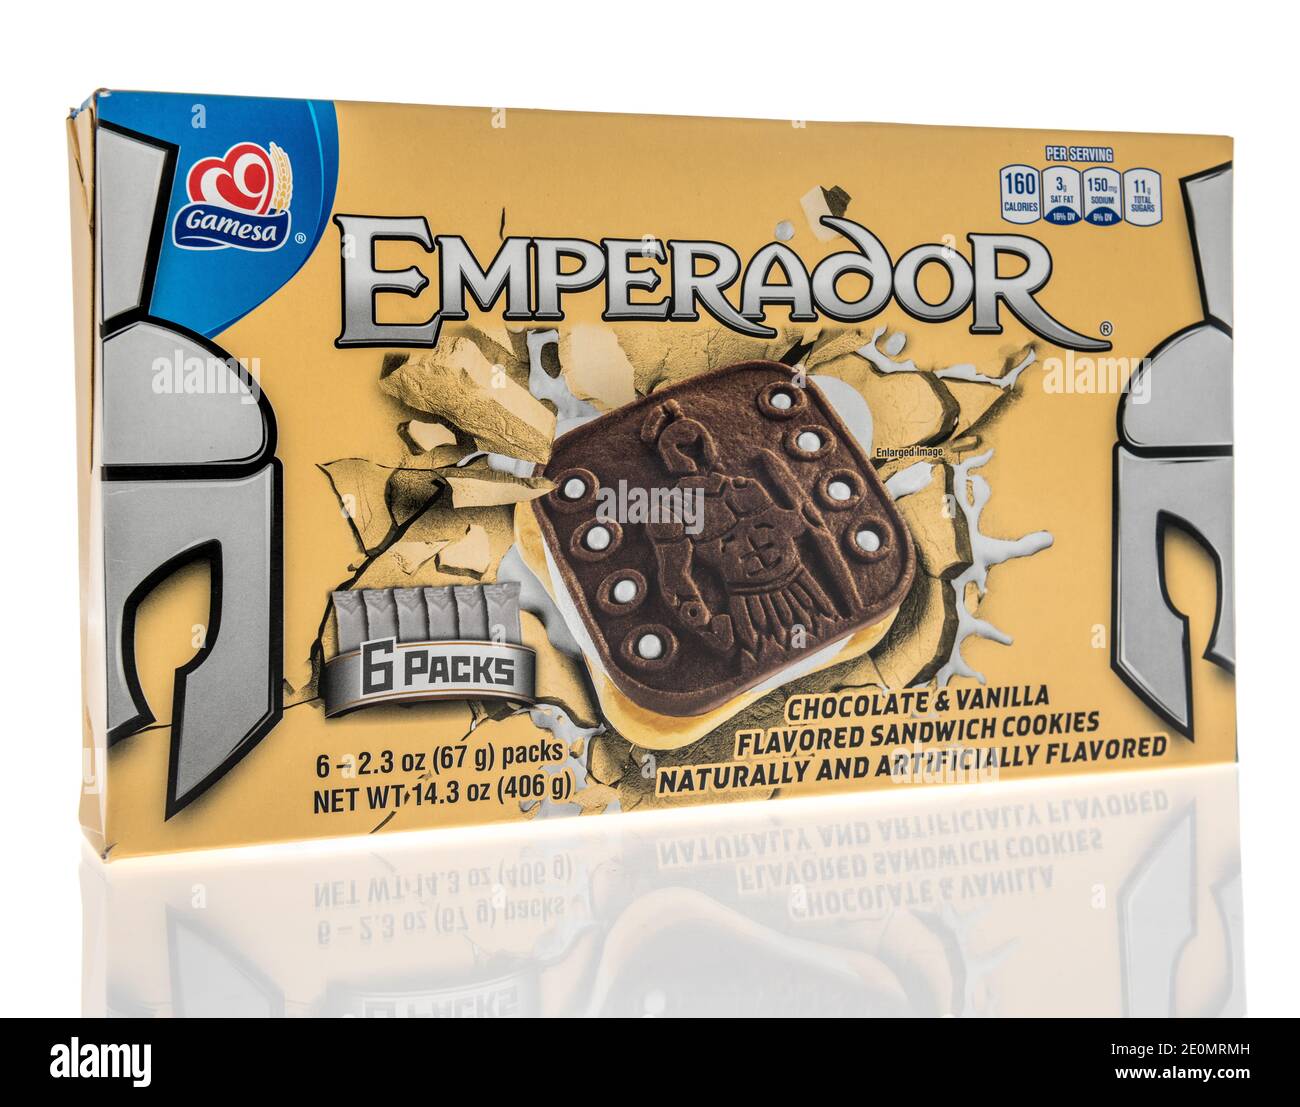 Winneconne, WI -30 Dezember 2020: Ein Paket von Gamesa emperador Cookies auf einem isolierten Hintergrund. Stockfoto